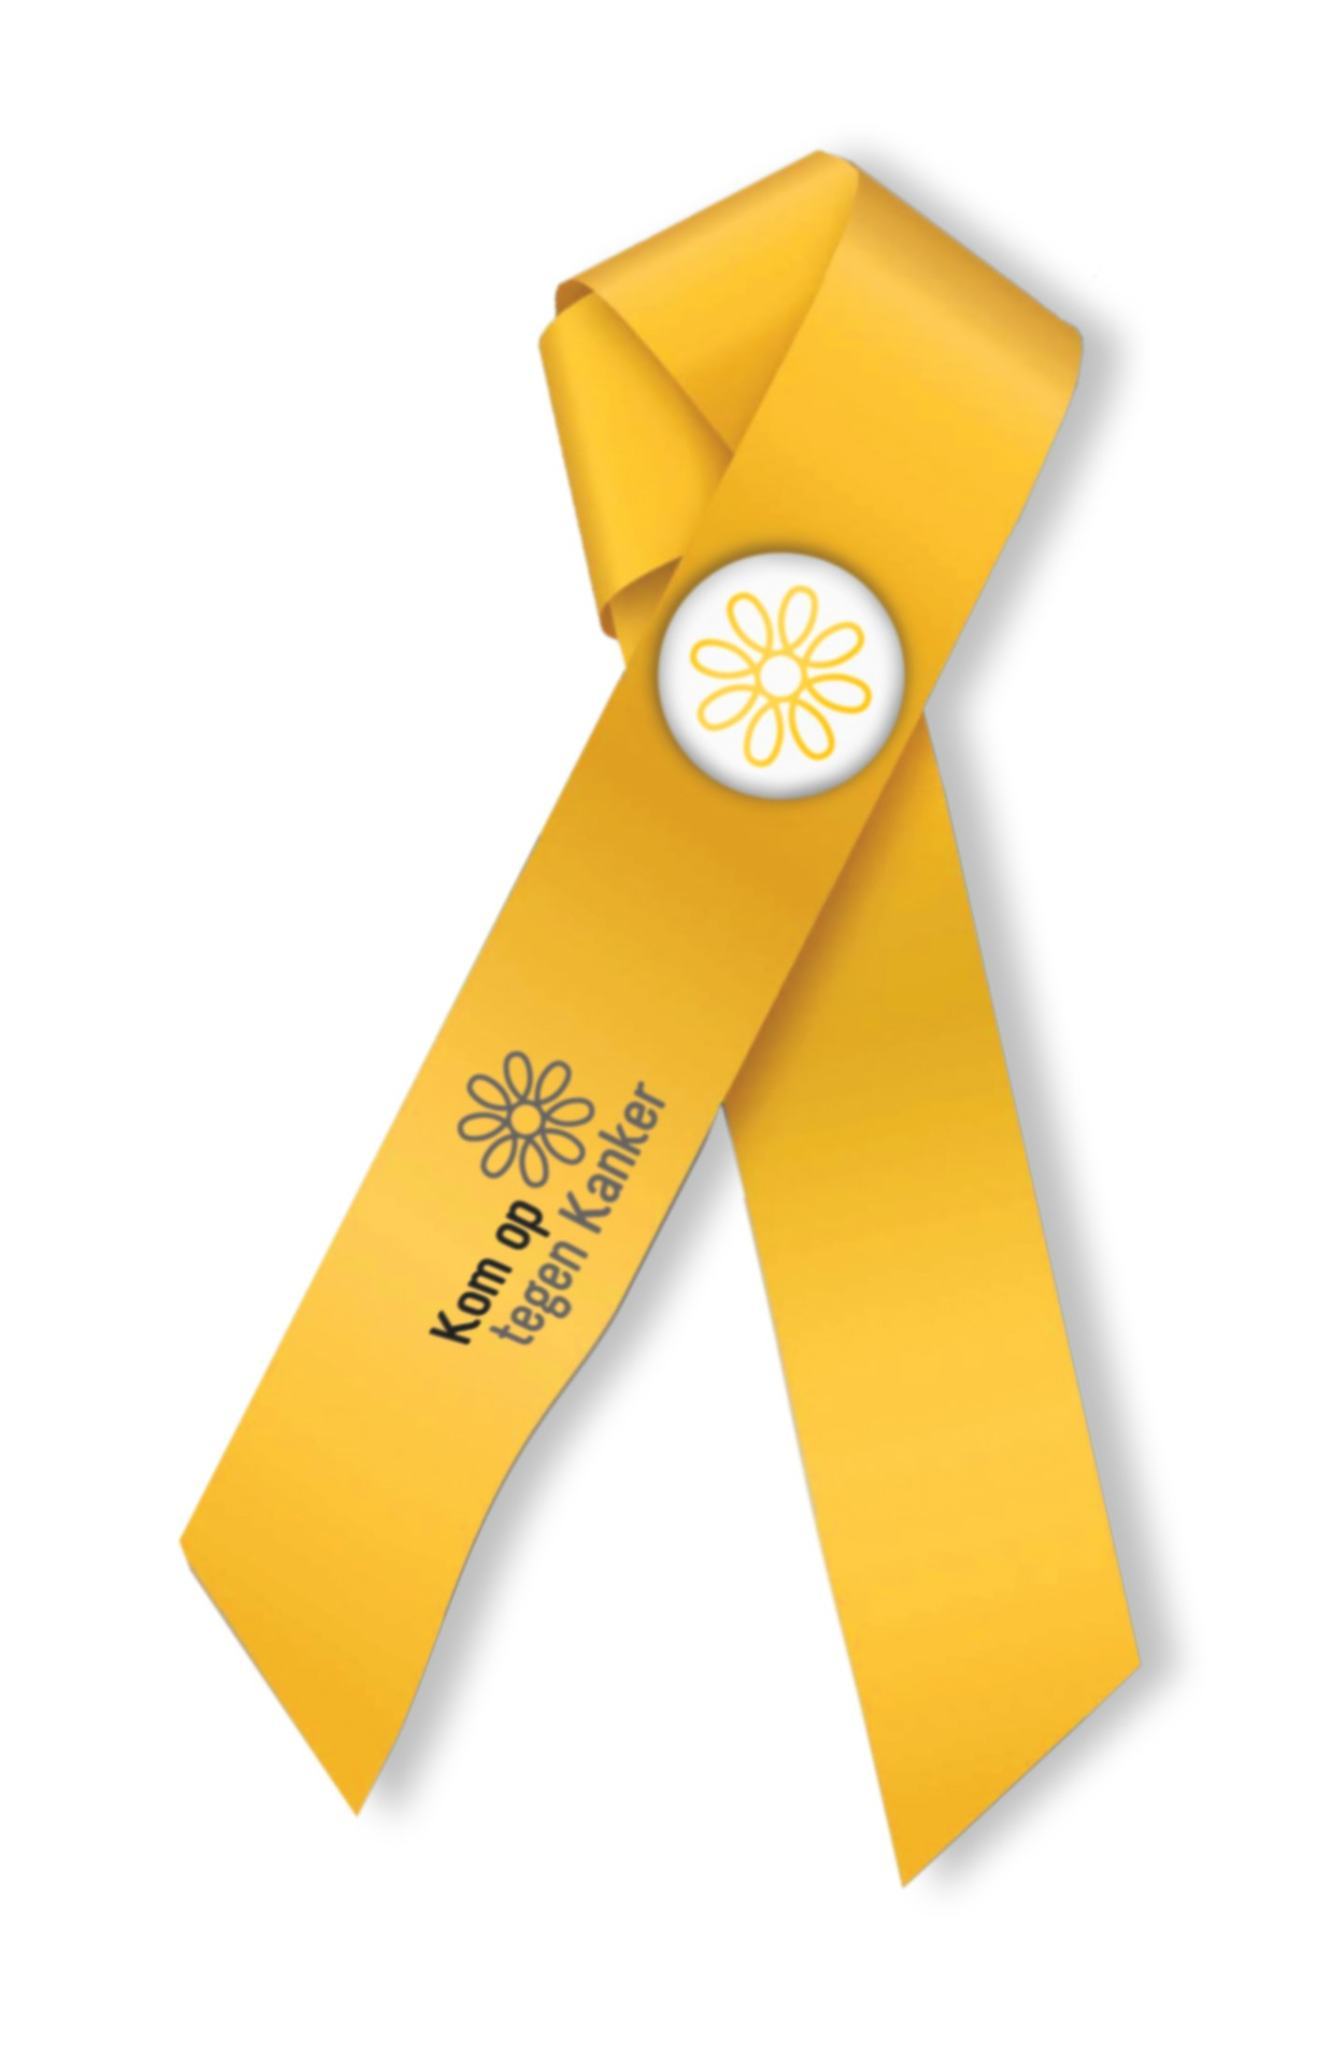 Gele lintjes voor de Dag tegen Kanker
